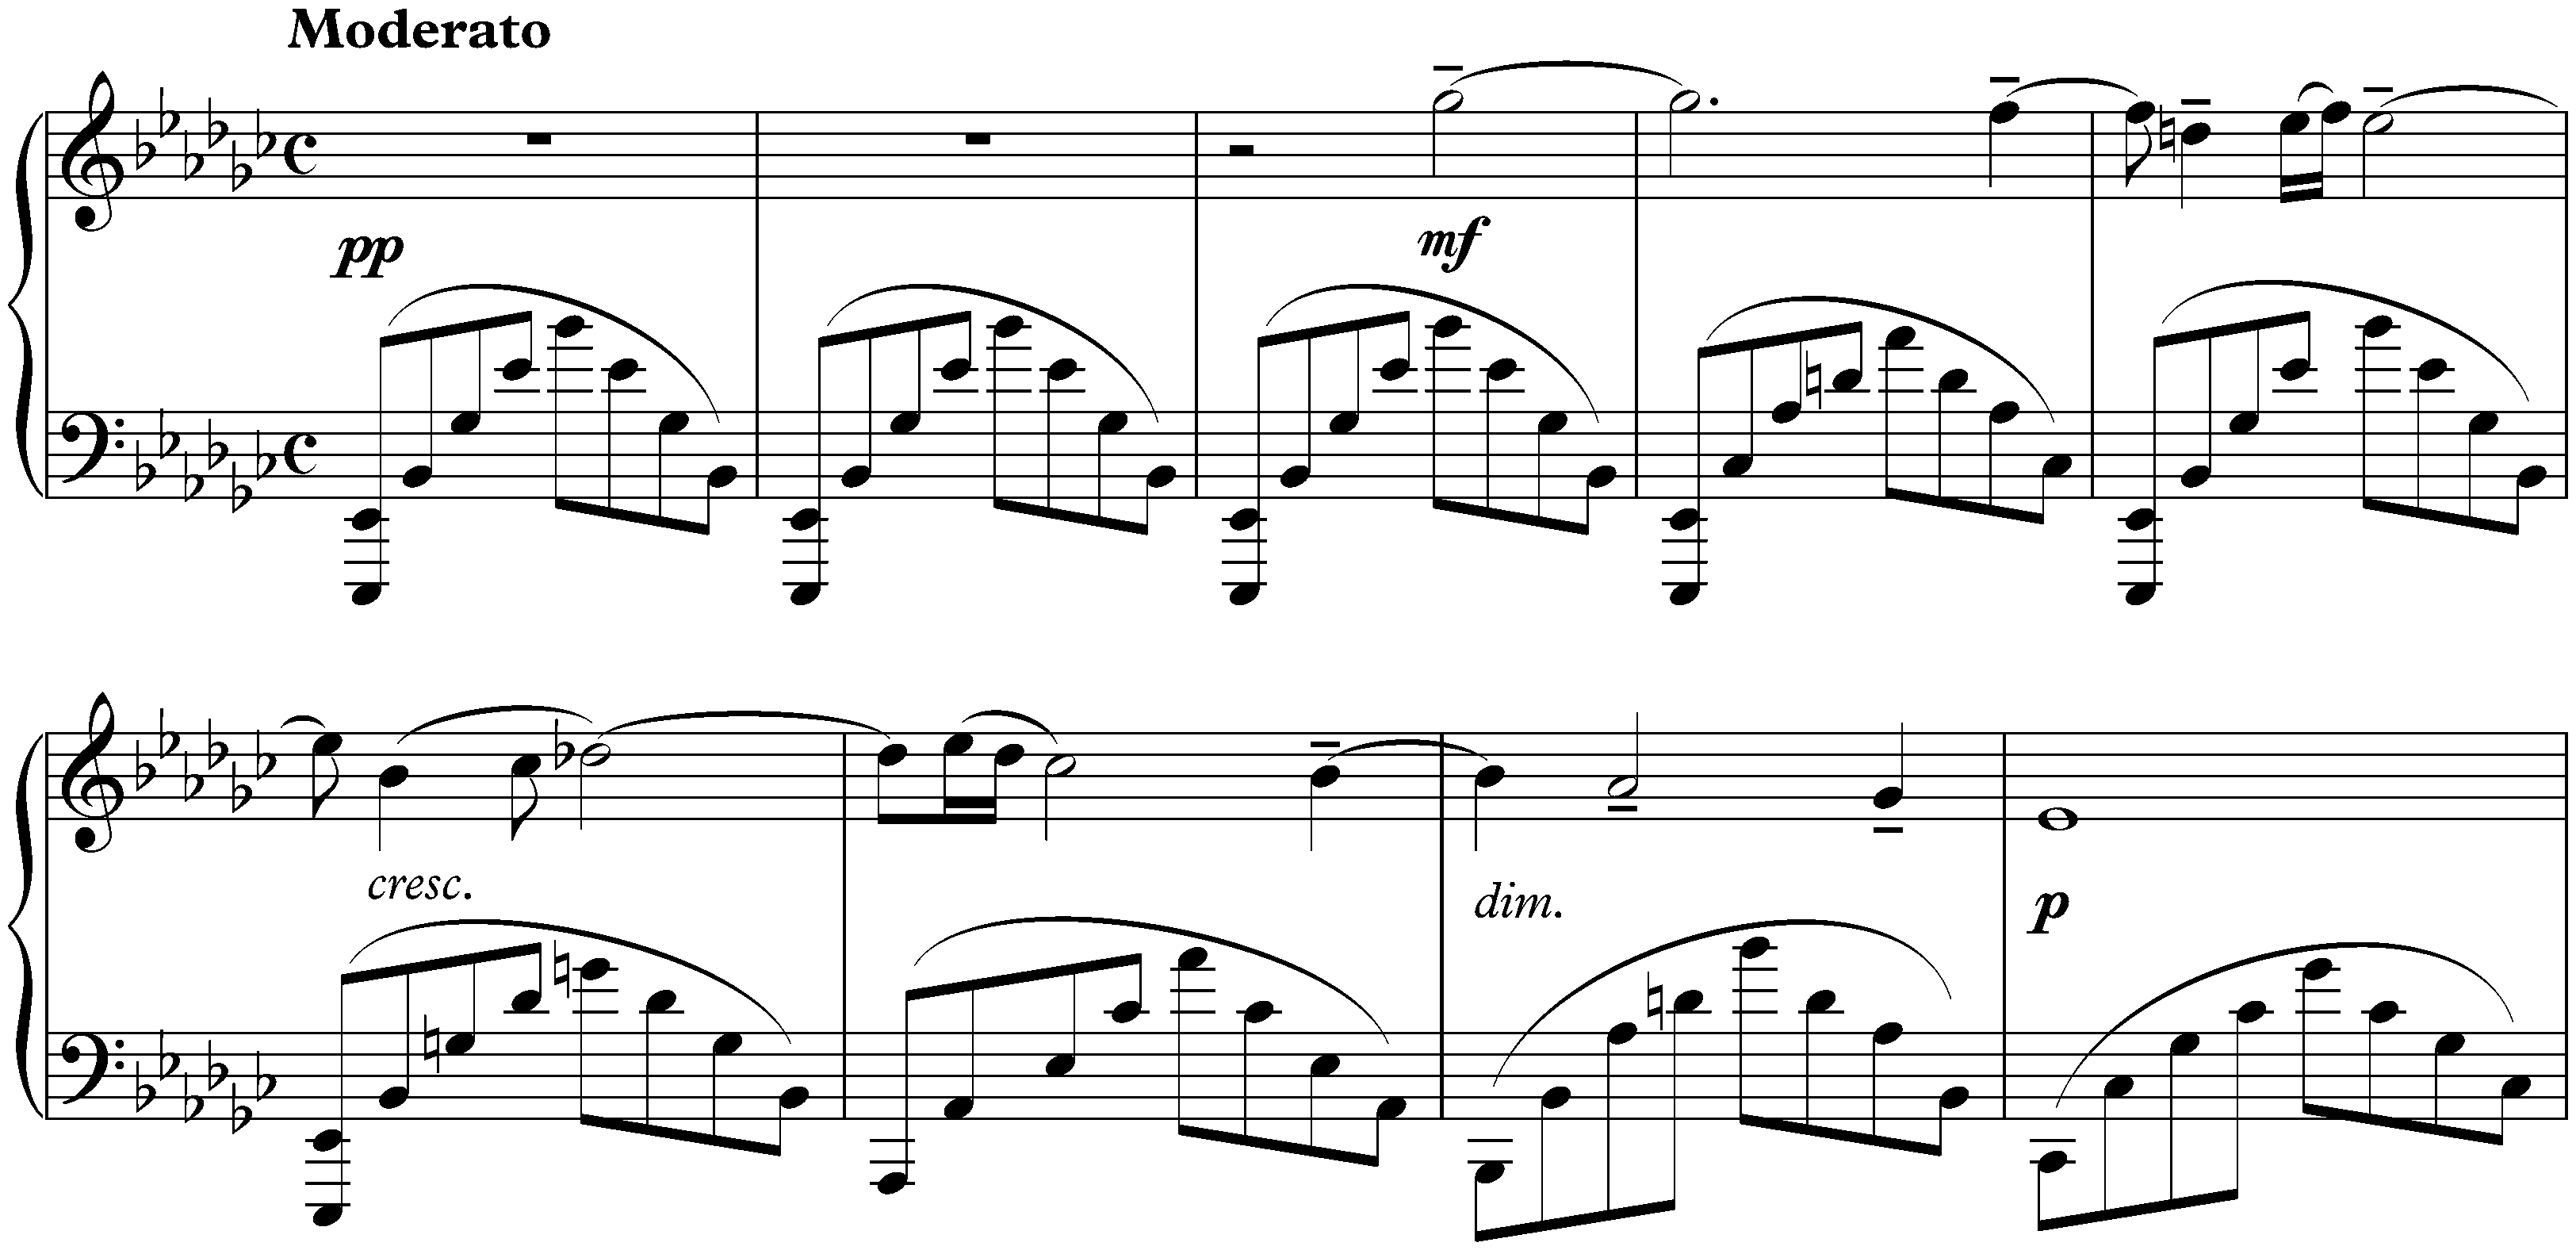 Morceaux de fantaisie, op. 3; 1. Elégie in E-flat minor